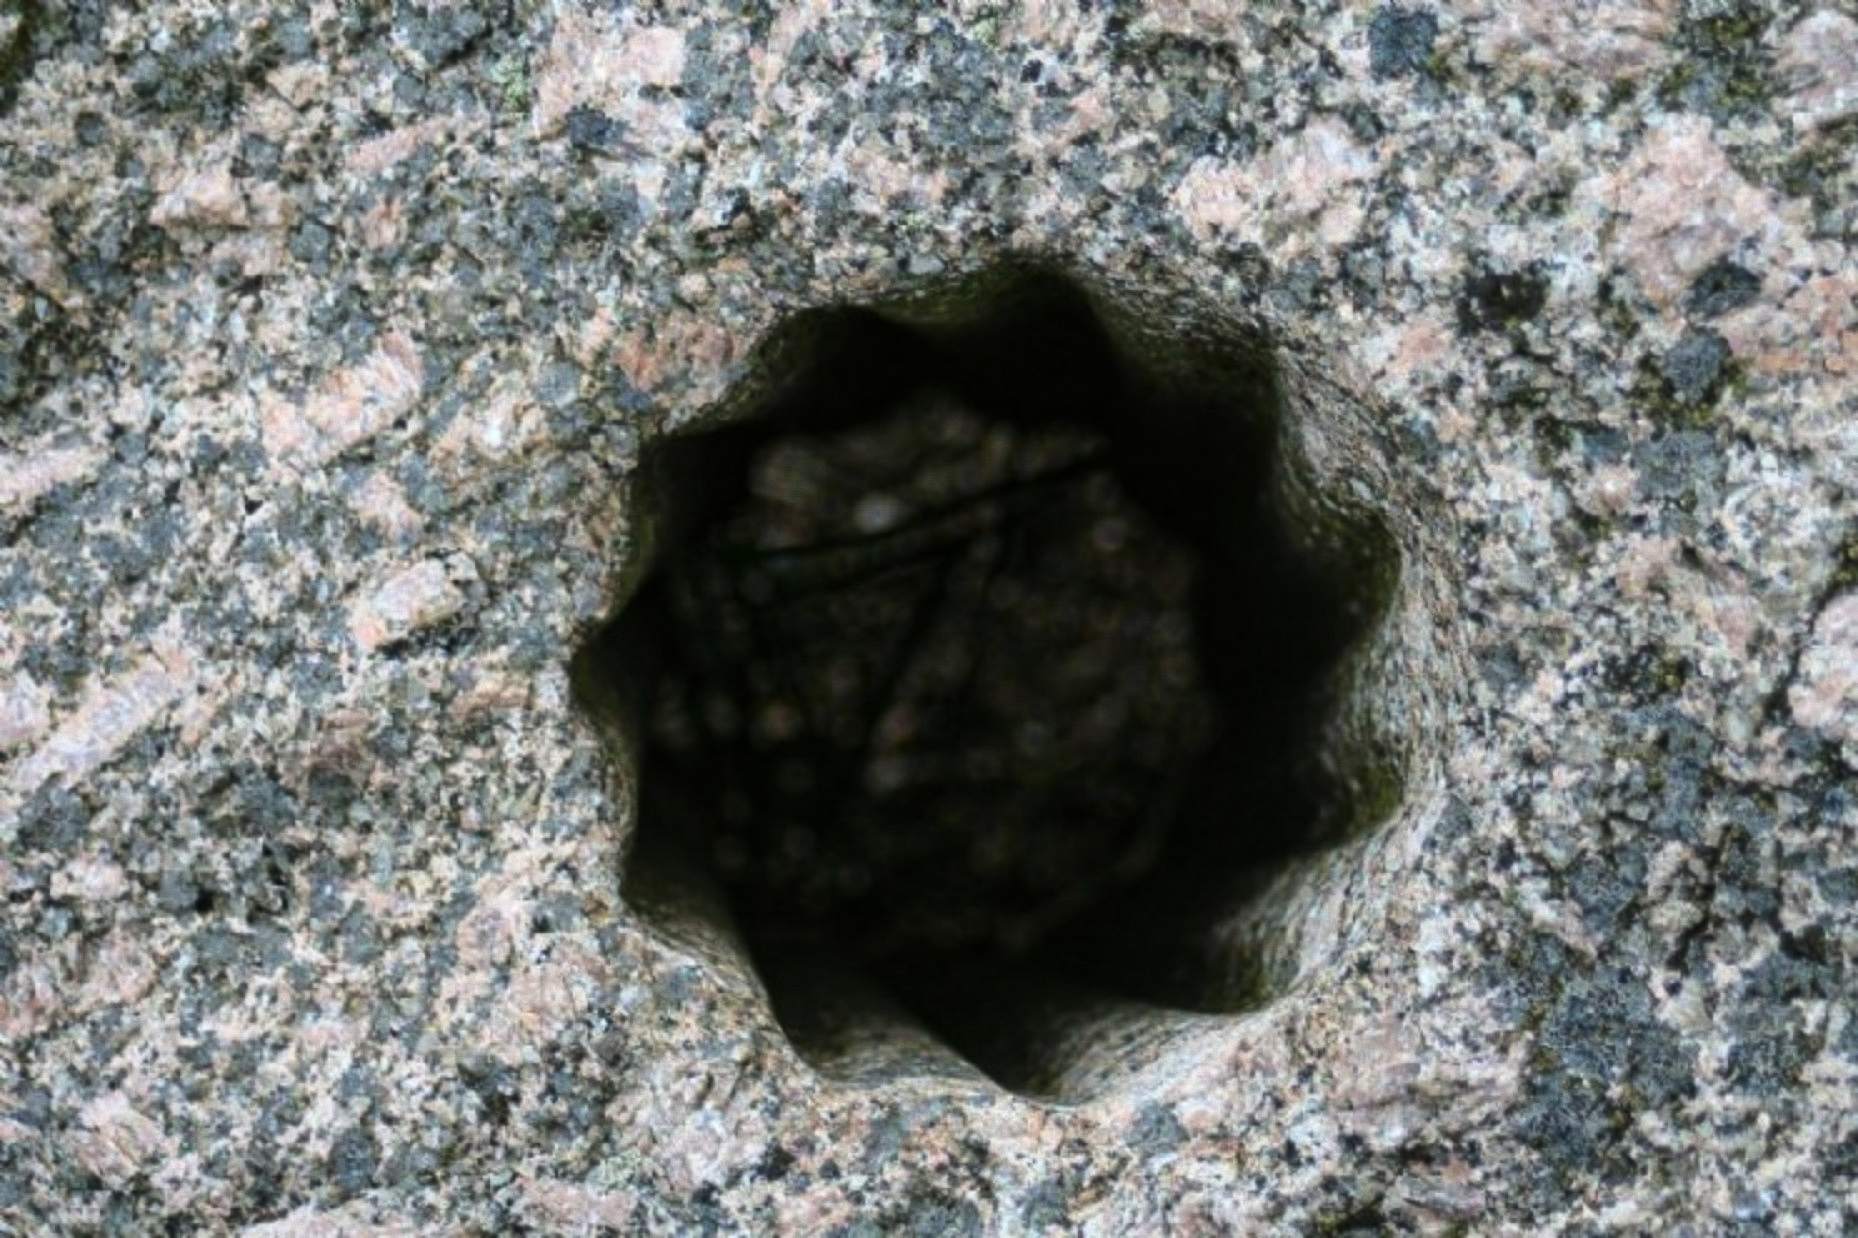 Тези странни, древни дупки във формата на звезда са открити издълбани в твърд камък във Волда, Норвегия – град, който някога е бил дом на множество скандинавски заселници и днес е посочен като един от най-важните обекти за археолозите в страната.